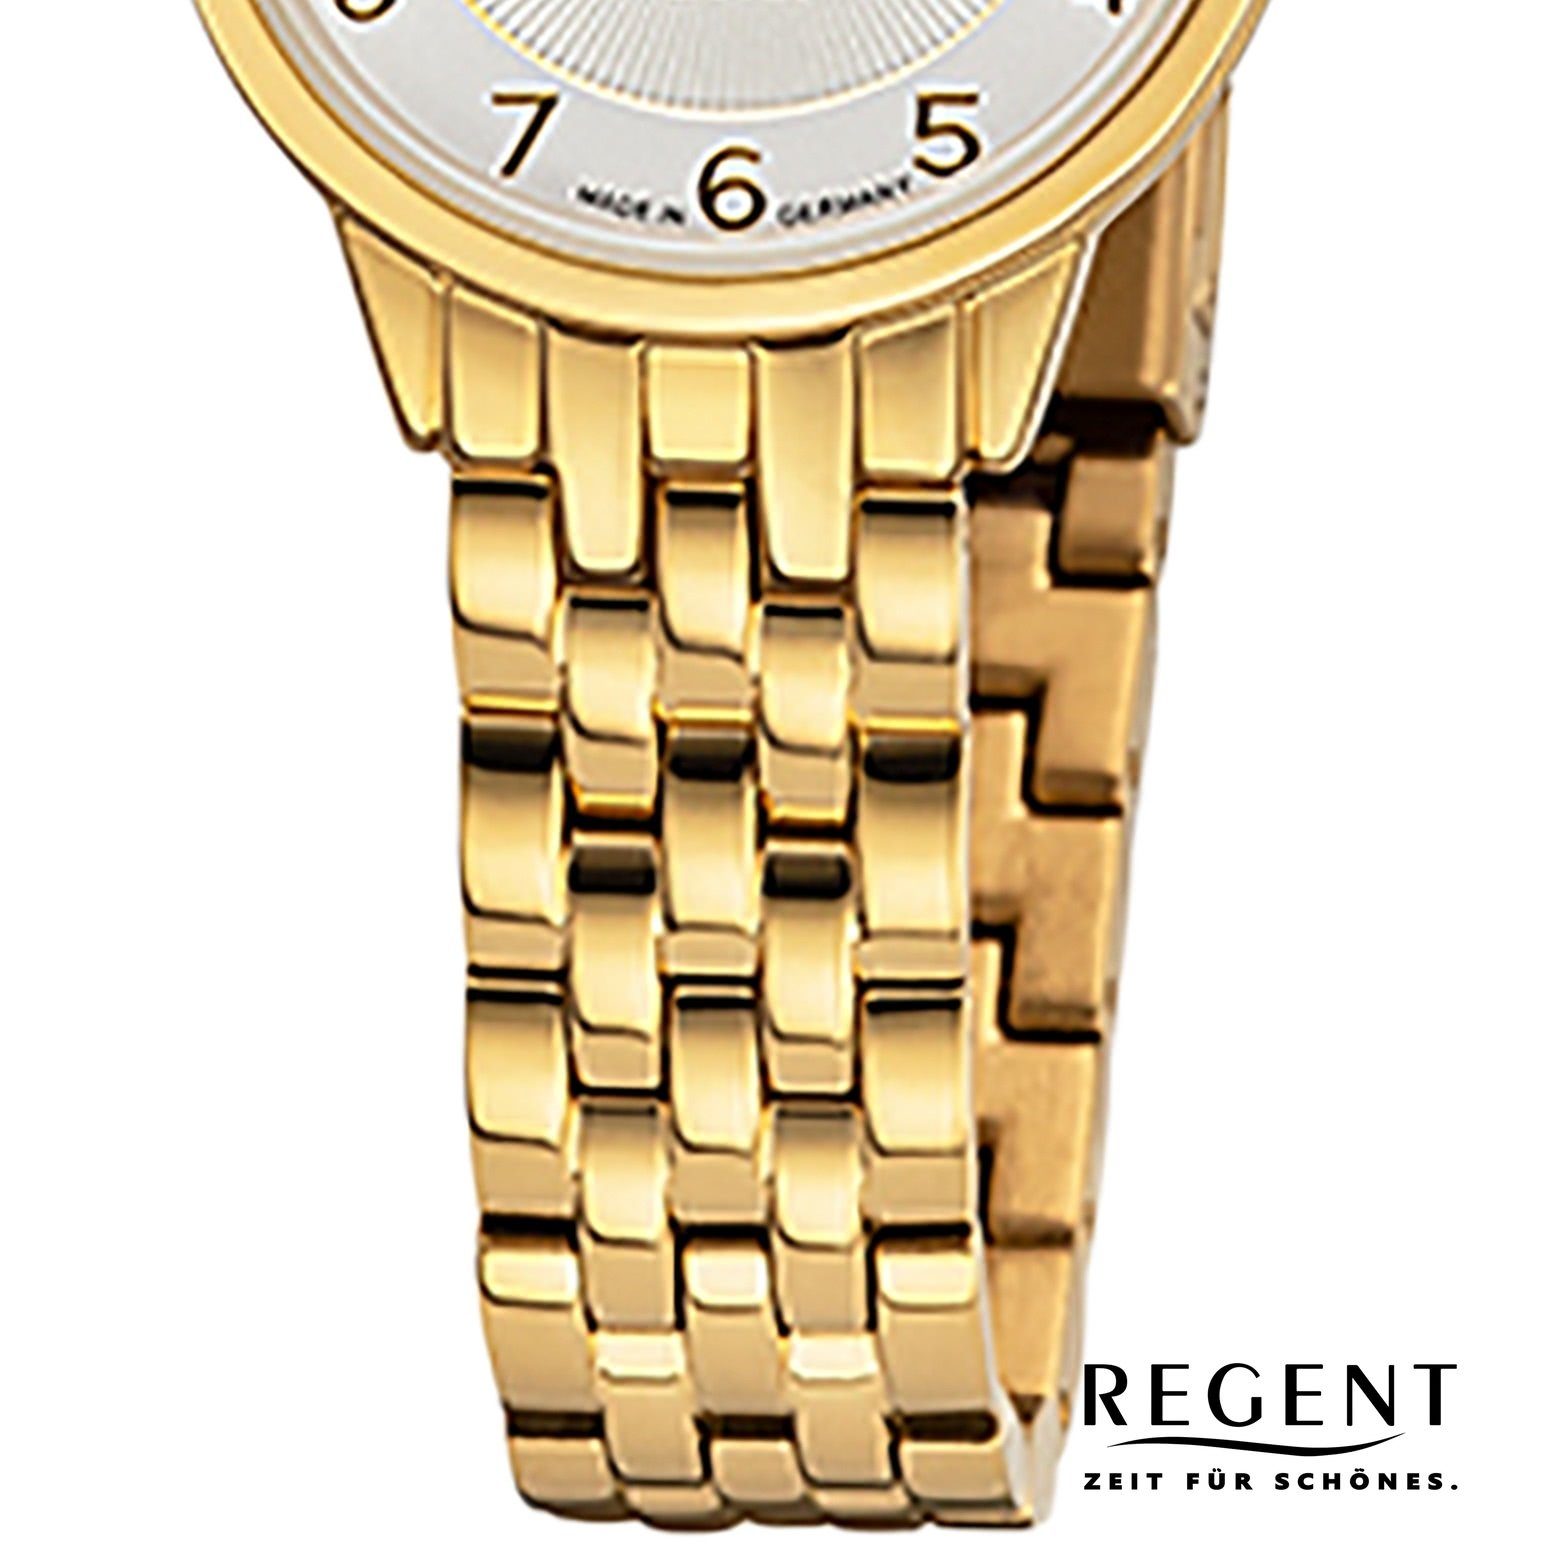 Regent (ca. Armbanduhr klein Damen Damen rund, Quarzuhr Regent Metallbandarmband 27mm), Armbanduhr Analoganzeige,